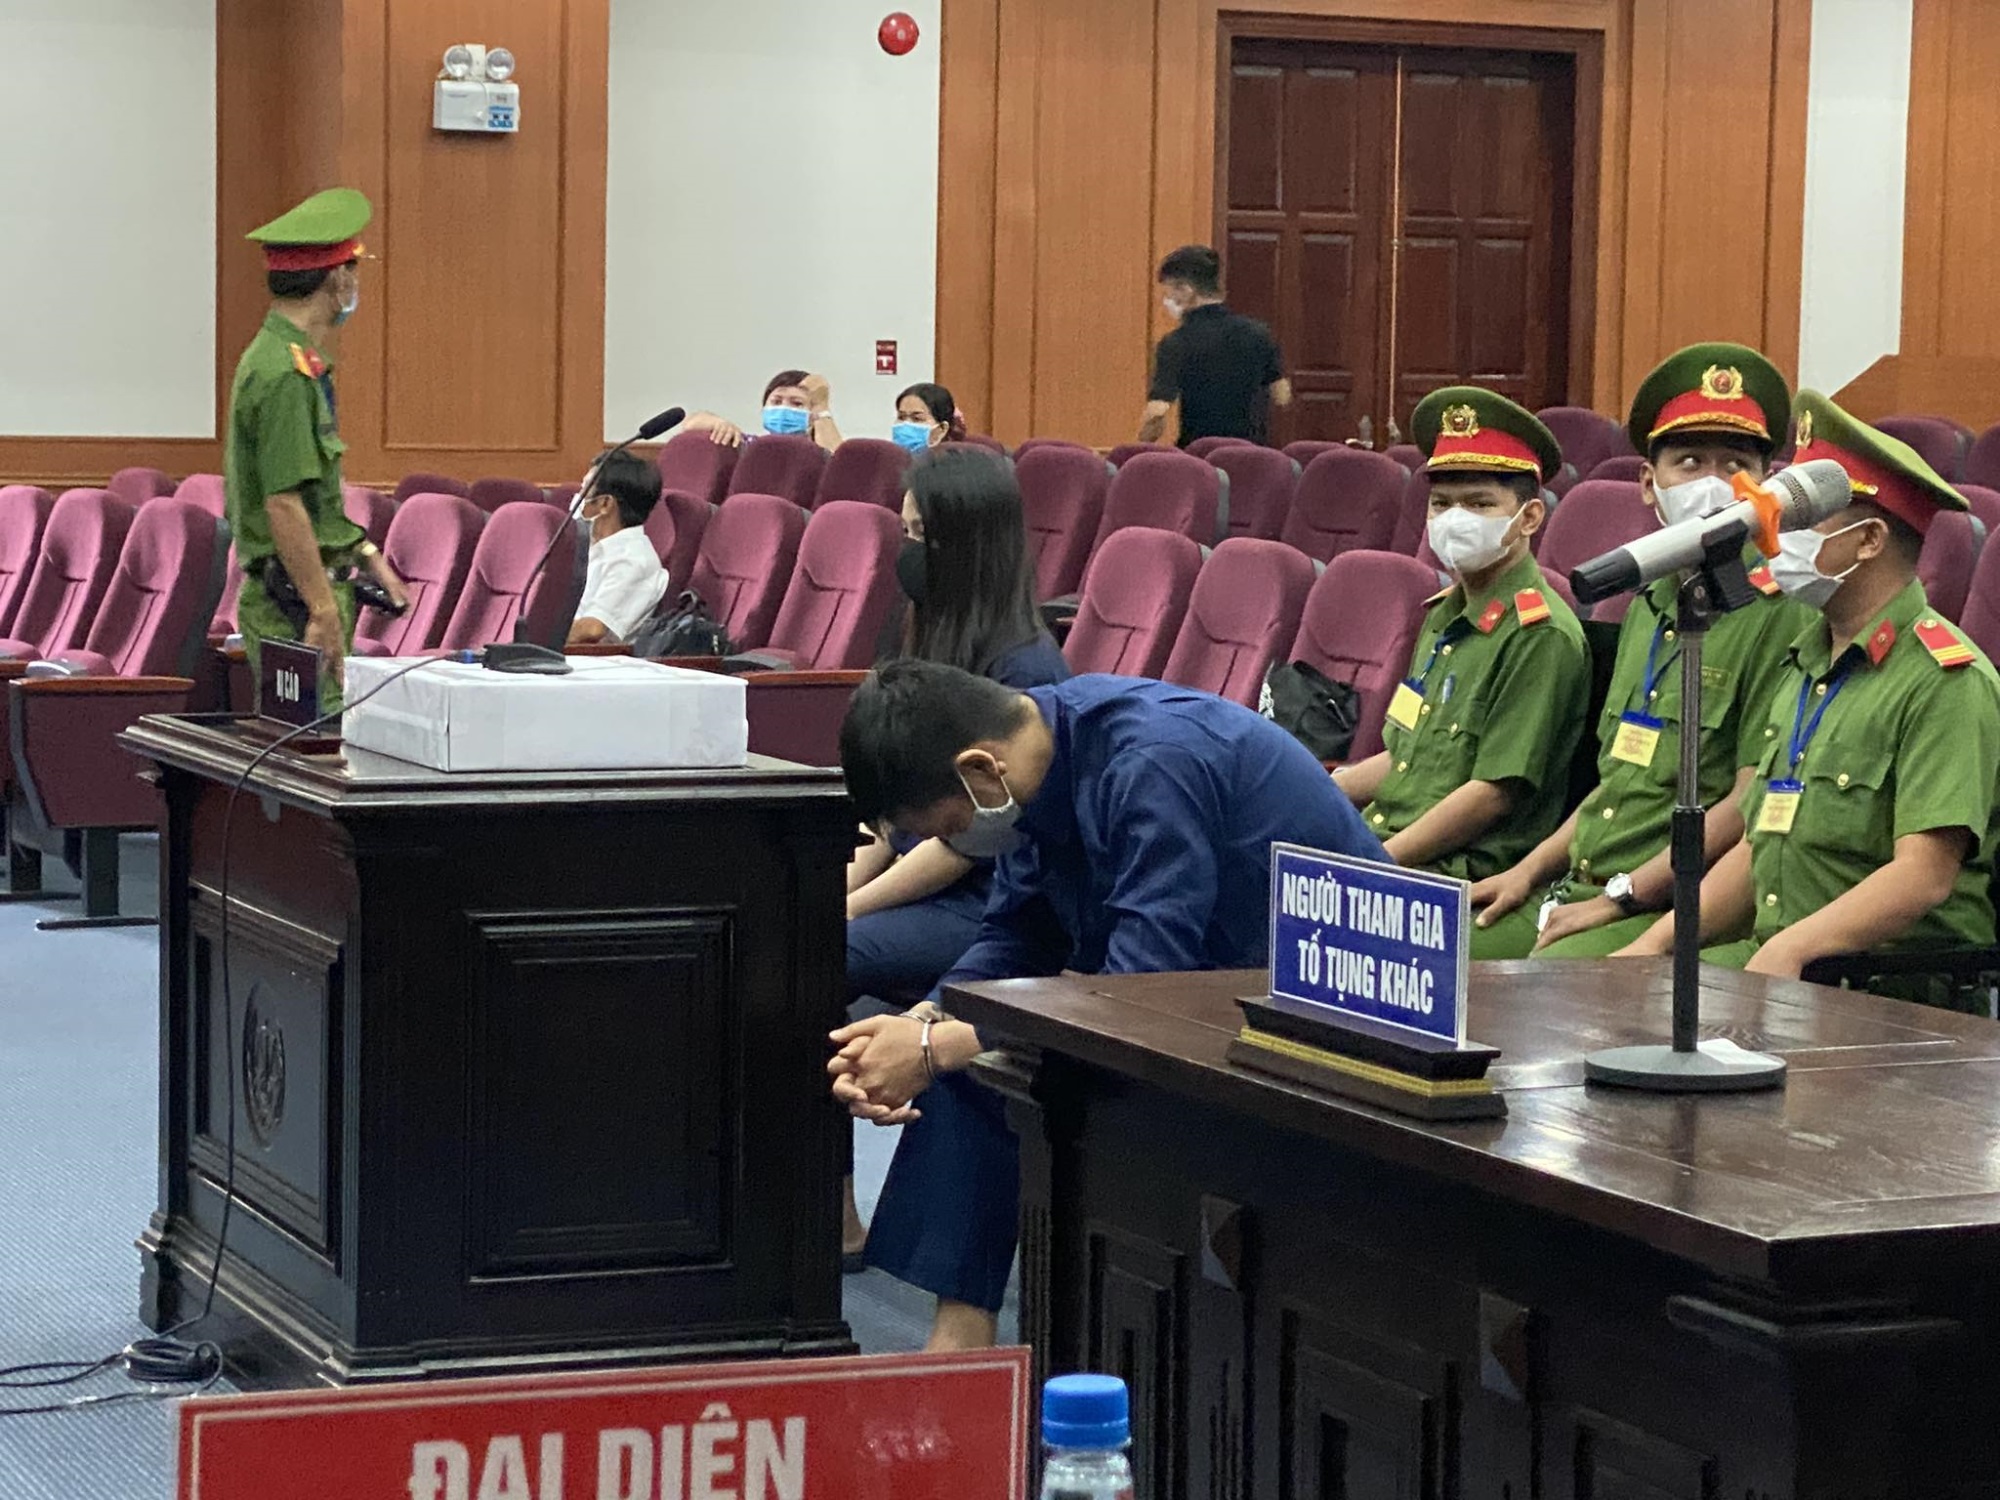 Lý do bố ruột bé gái 8 tuổi - Nguyễn Kim Trung Thái thoát tội 'Giết người': 'Không cố ý tước đoạt mạng sống của con gái mình' - Ảnh 1